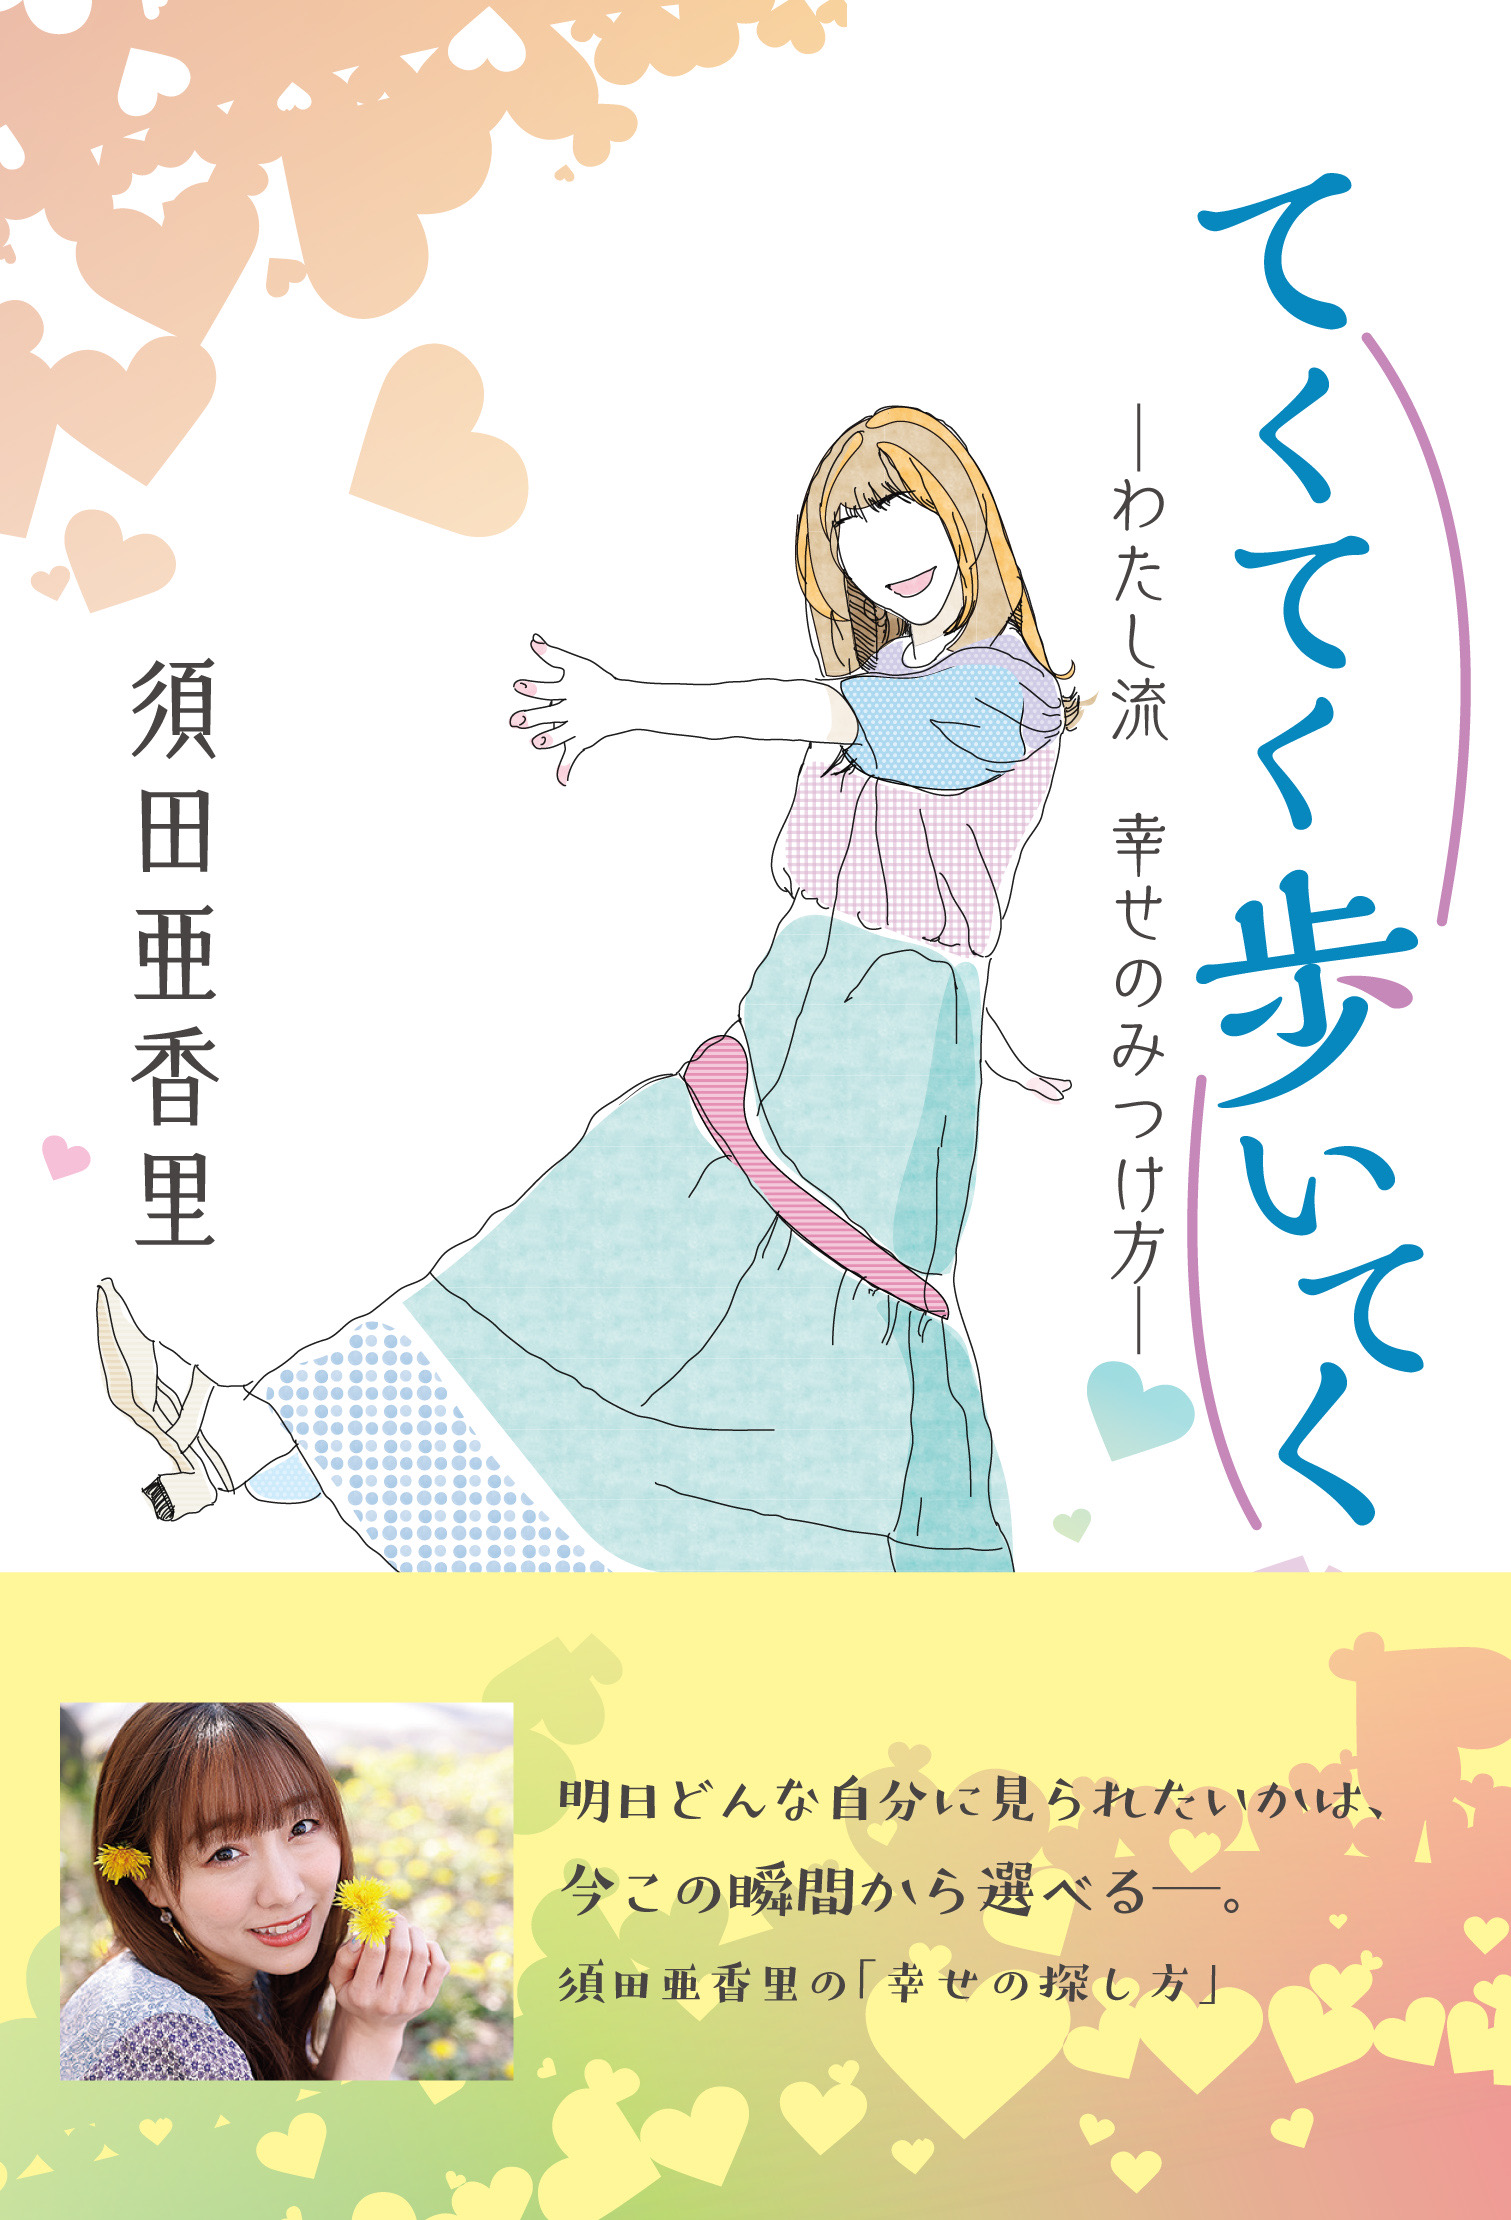 須田亜香里さん「てくてく歩いてく -わたし流 幸せのみつけ方-」 発売記念　書籍お渡しイベント